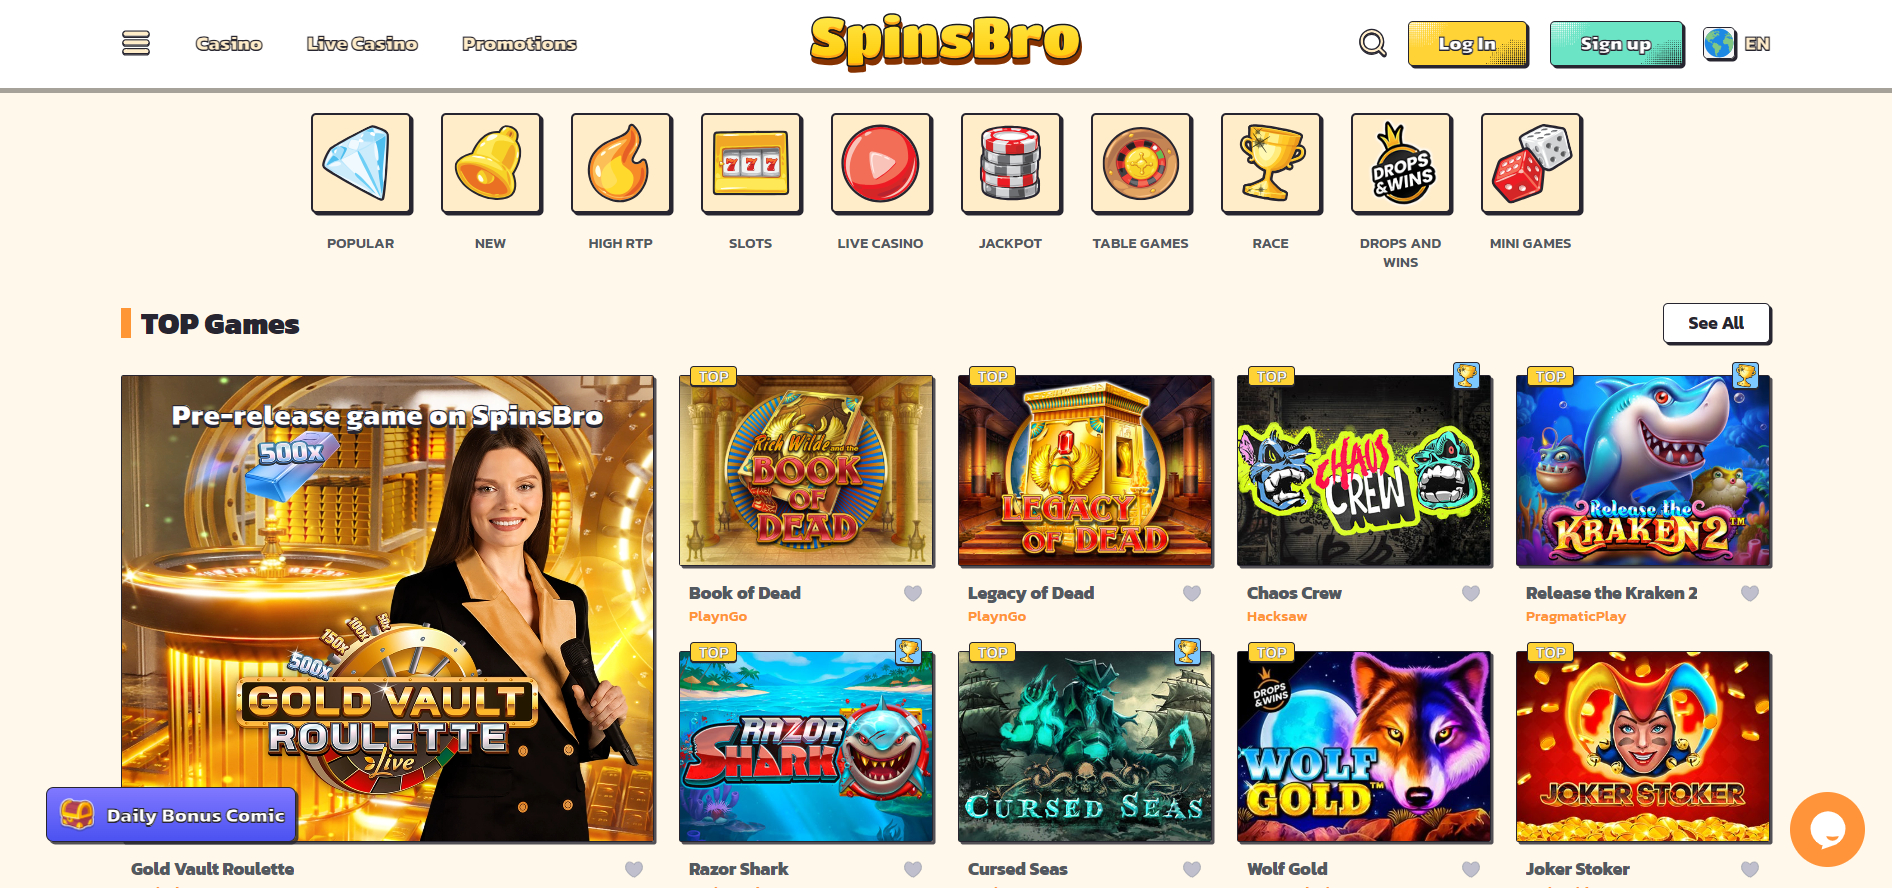 SpinsBro Casino Lobby